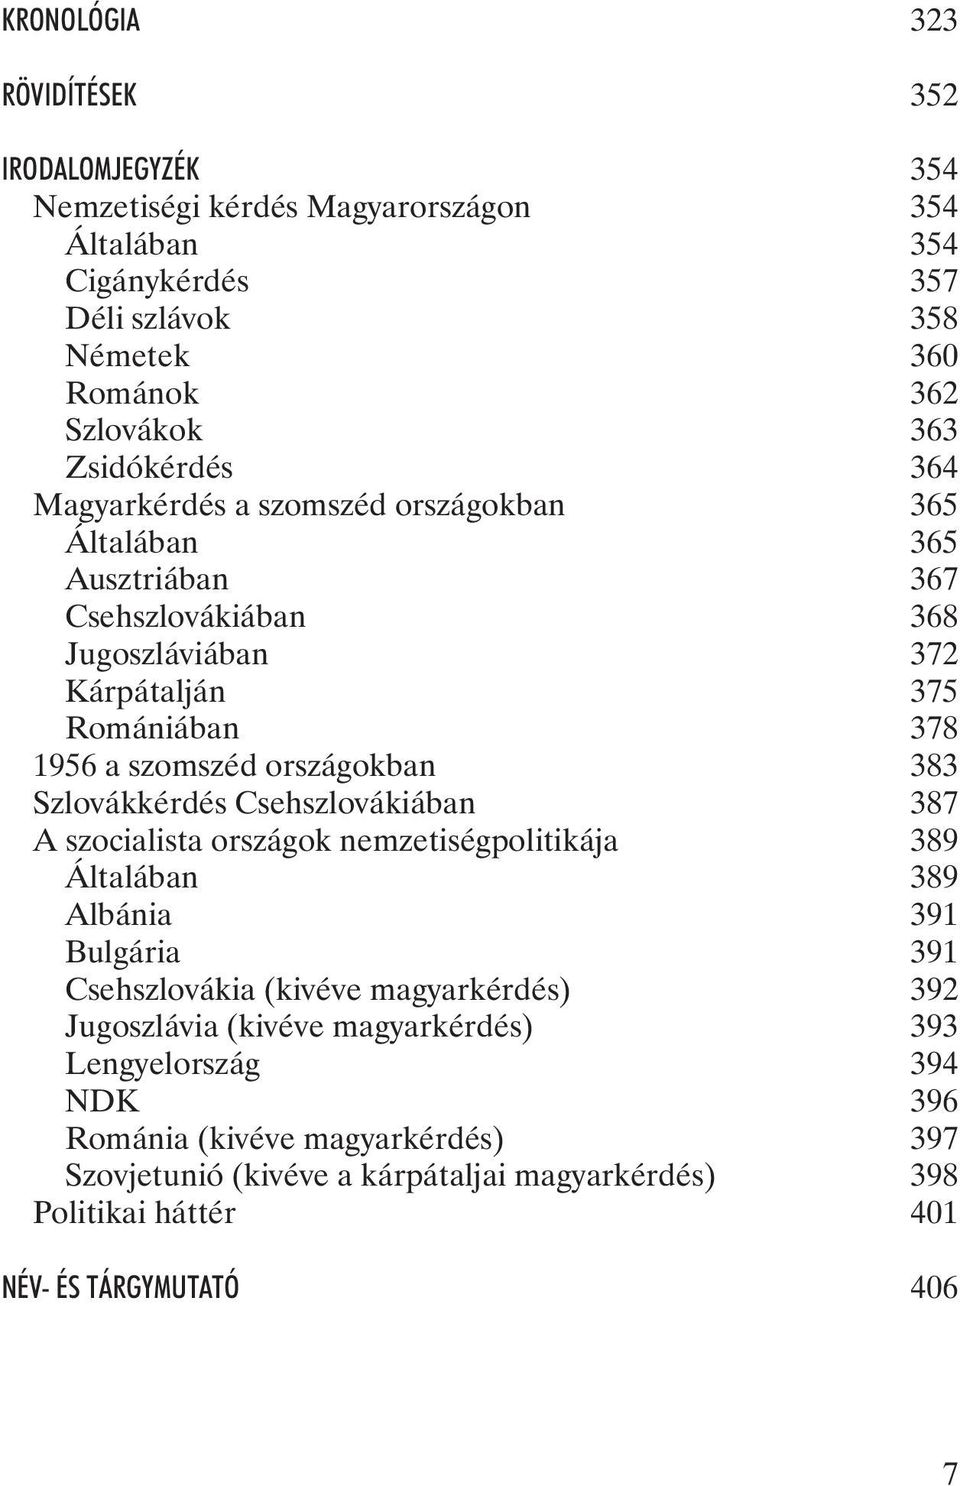 országokban 383 Szlovákkérdés Csehszlovákiában 387 A szocialista országok nemzetiségpolitikája 389 Általában 389 Albánia 391 Bulgária 391 Csehszlovákia (kivéve magyarkérdés) 392